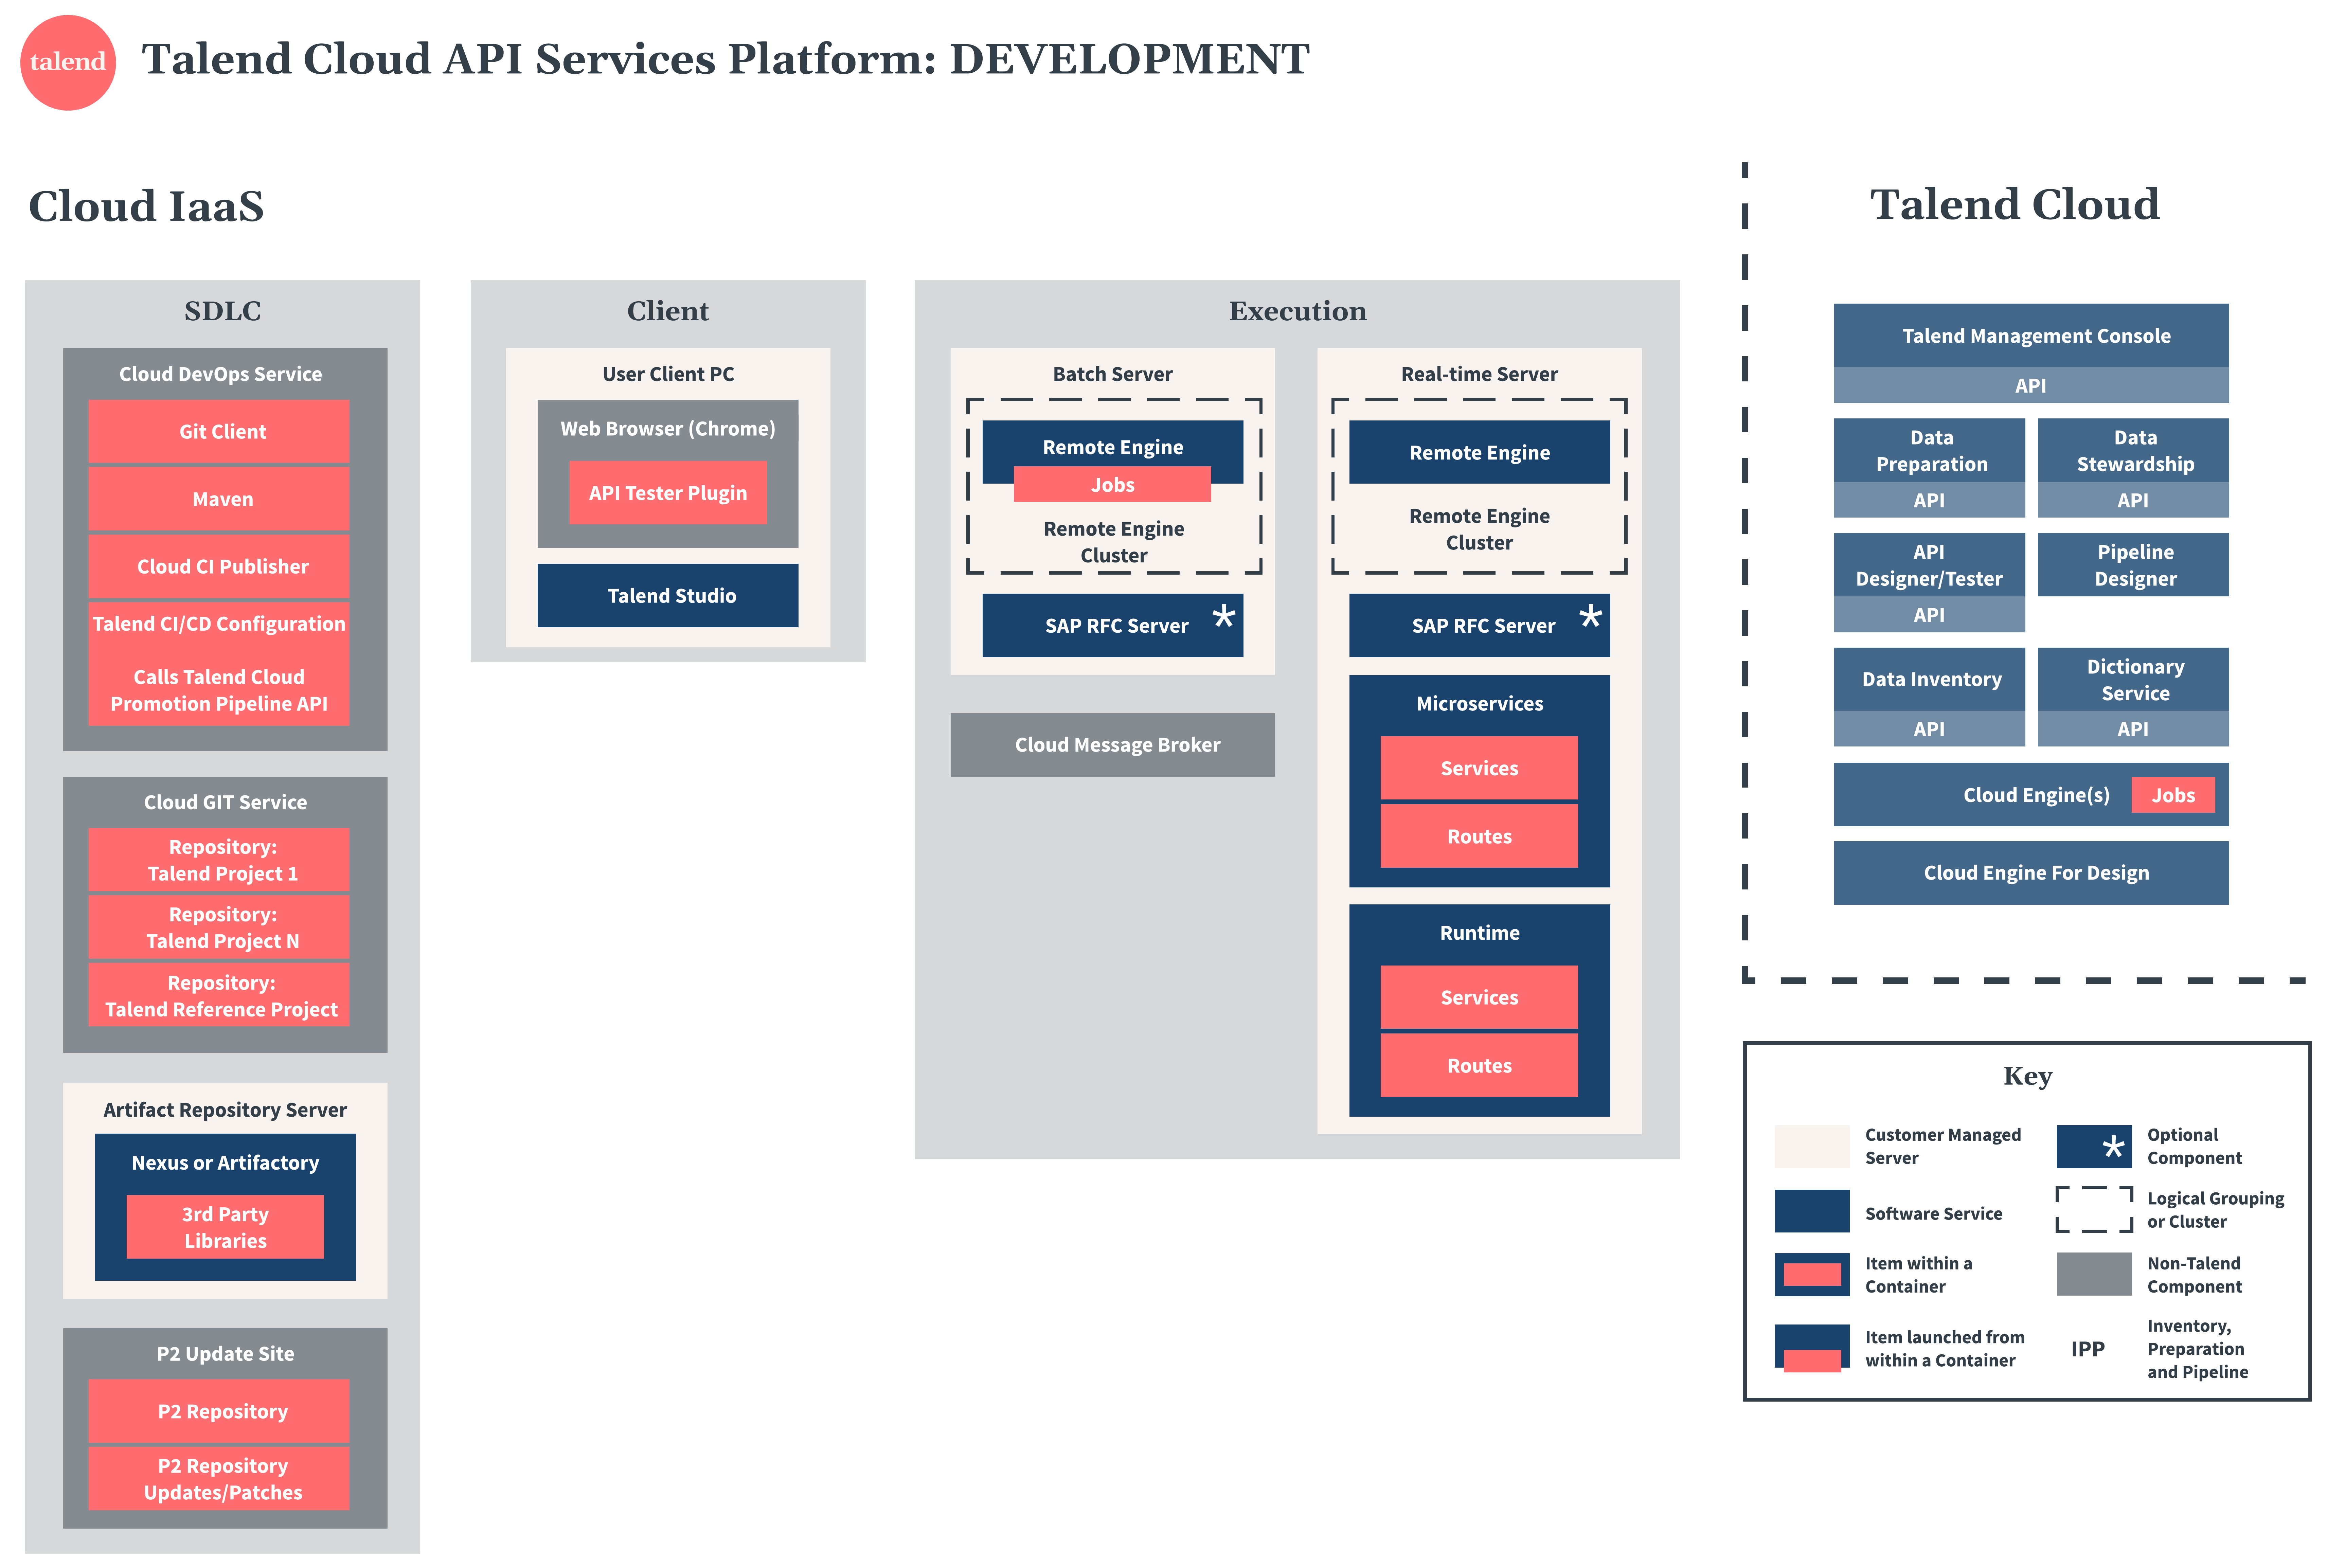 Talend Cloud API Services Platform Diagramm zu Entwicklung.